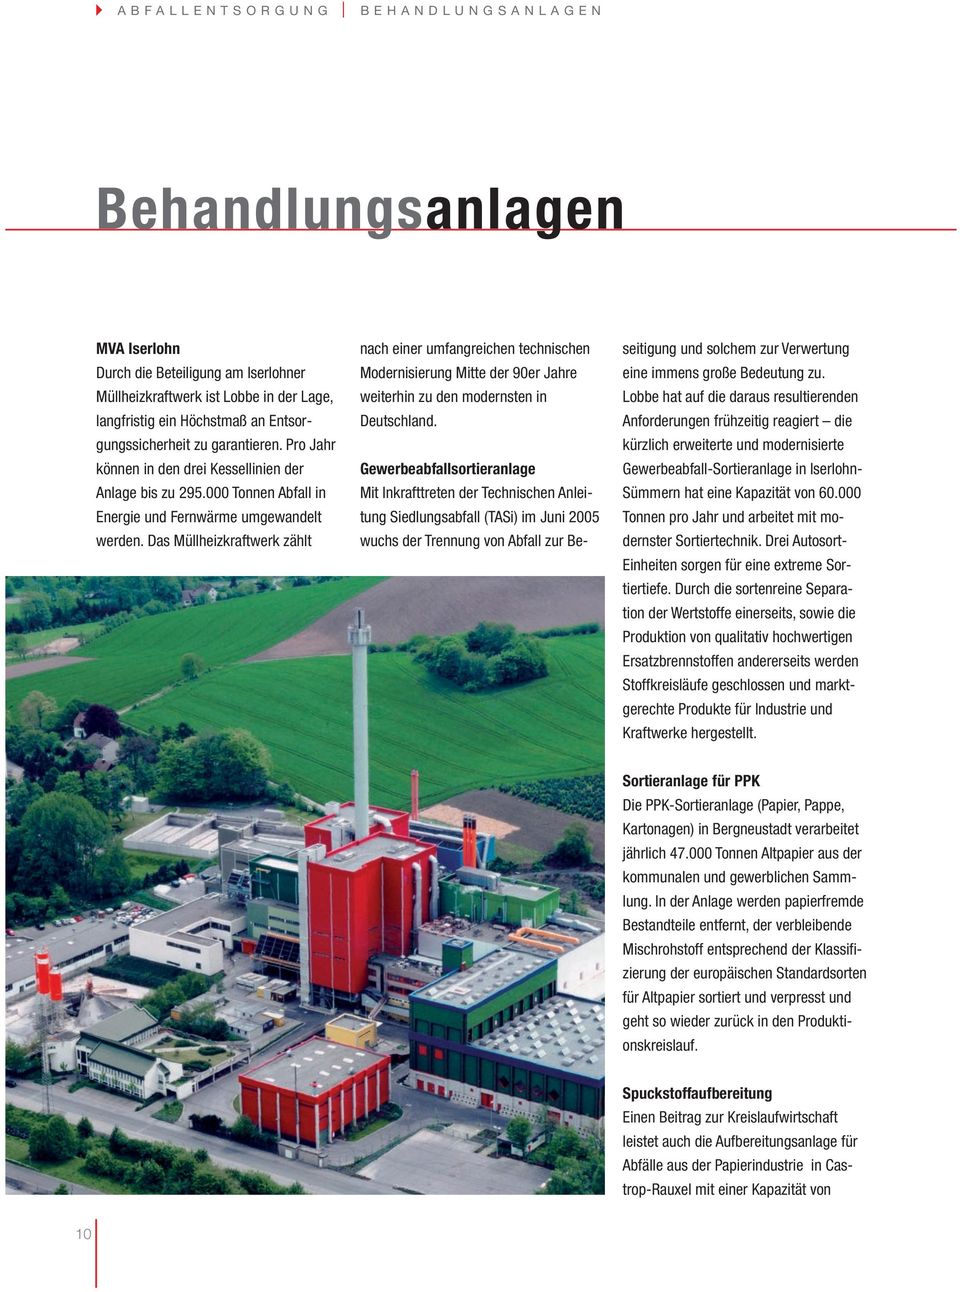 Das Müllheizkraftwerk zählt nach einer umfangreichen technischen Modernisierung Mitte der 90er Jahre weiterhin zu den modernsten in Deutschland.